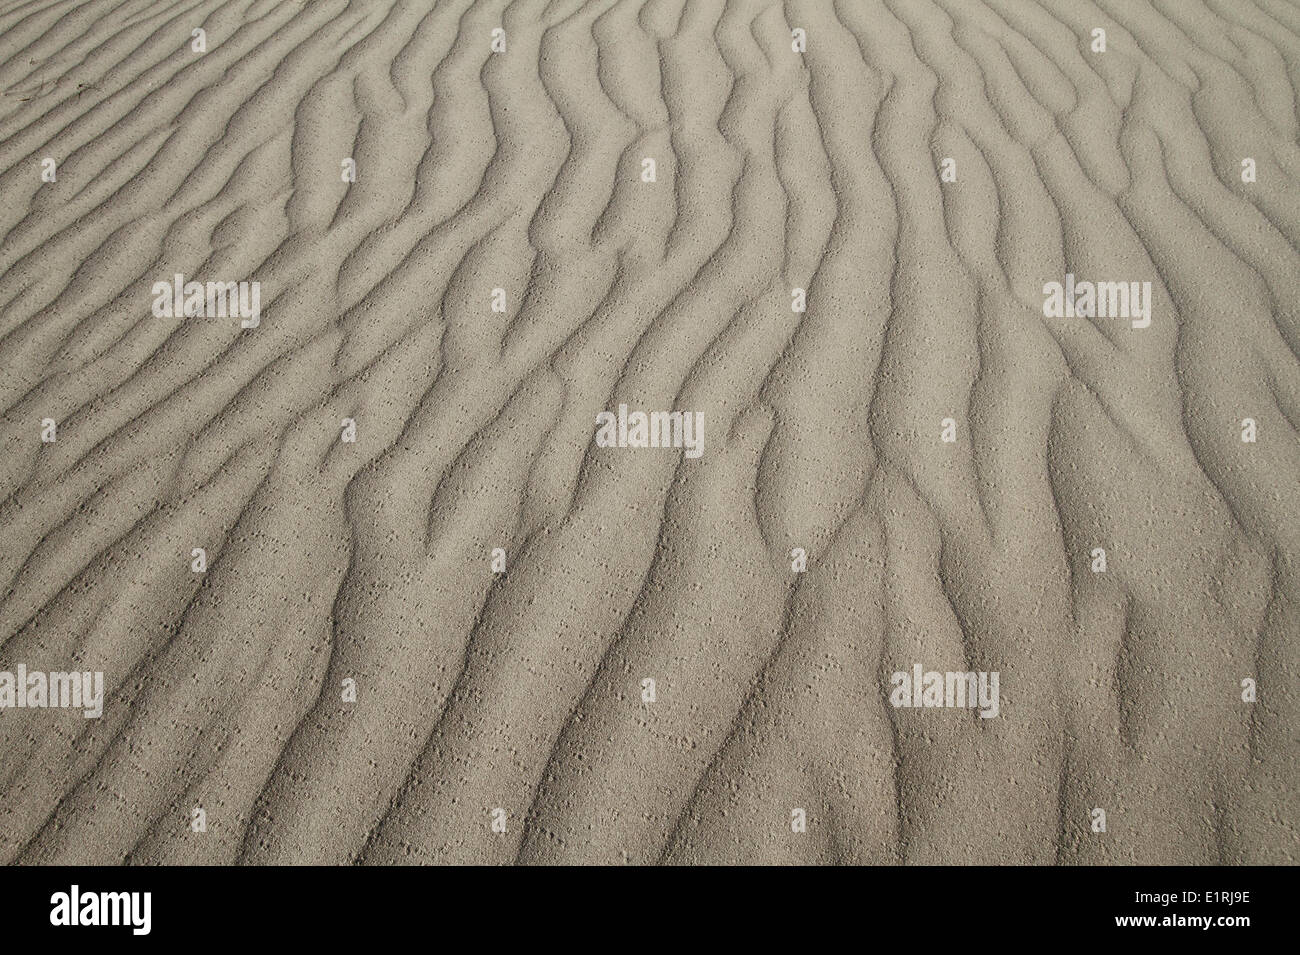 Patrones en la arena de la costa de Rottumeroog Foto de stock